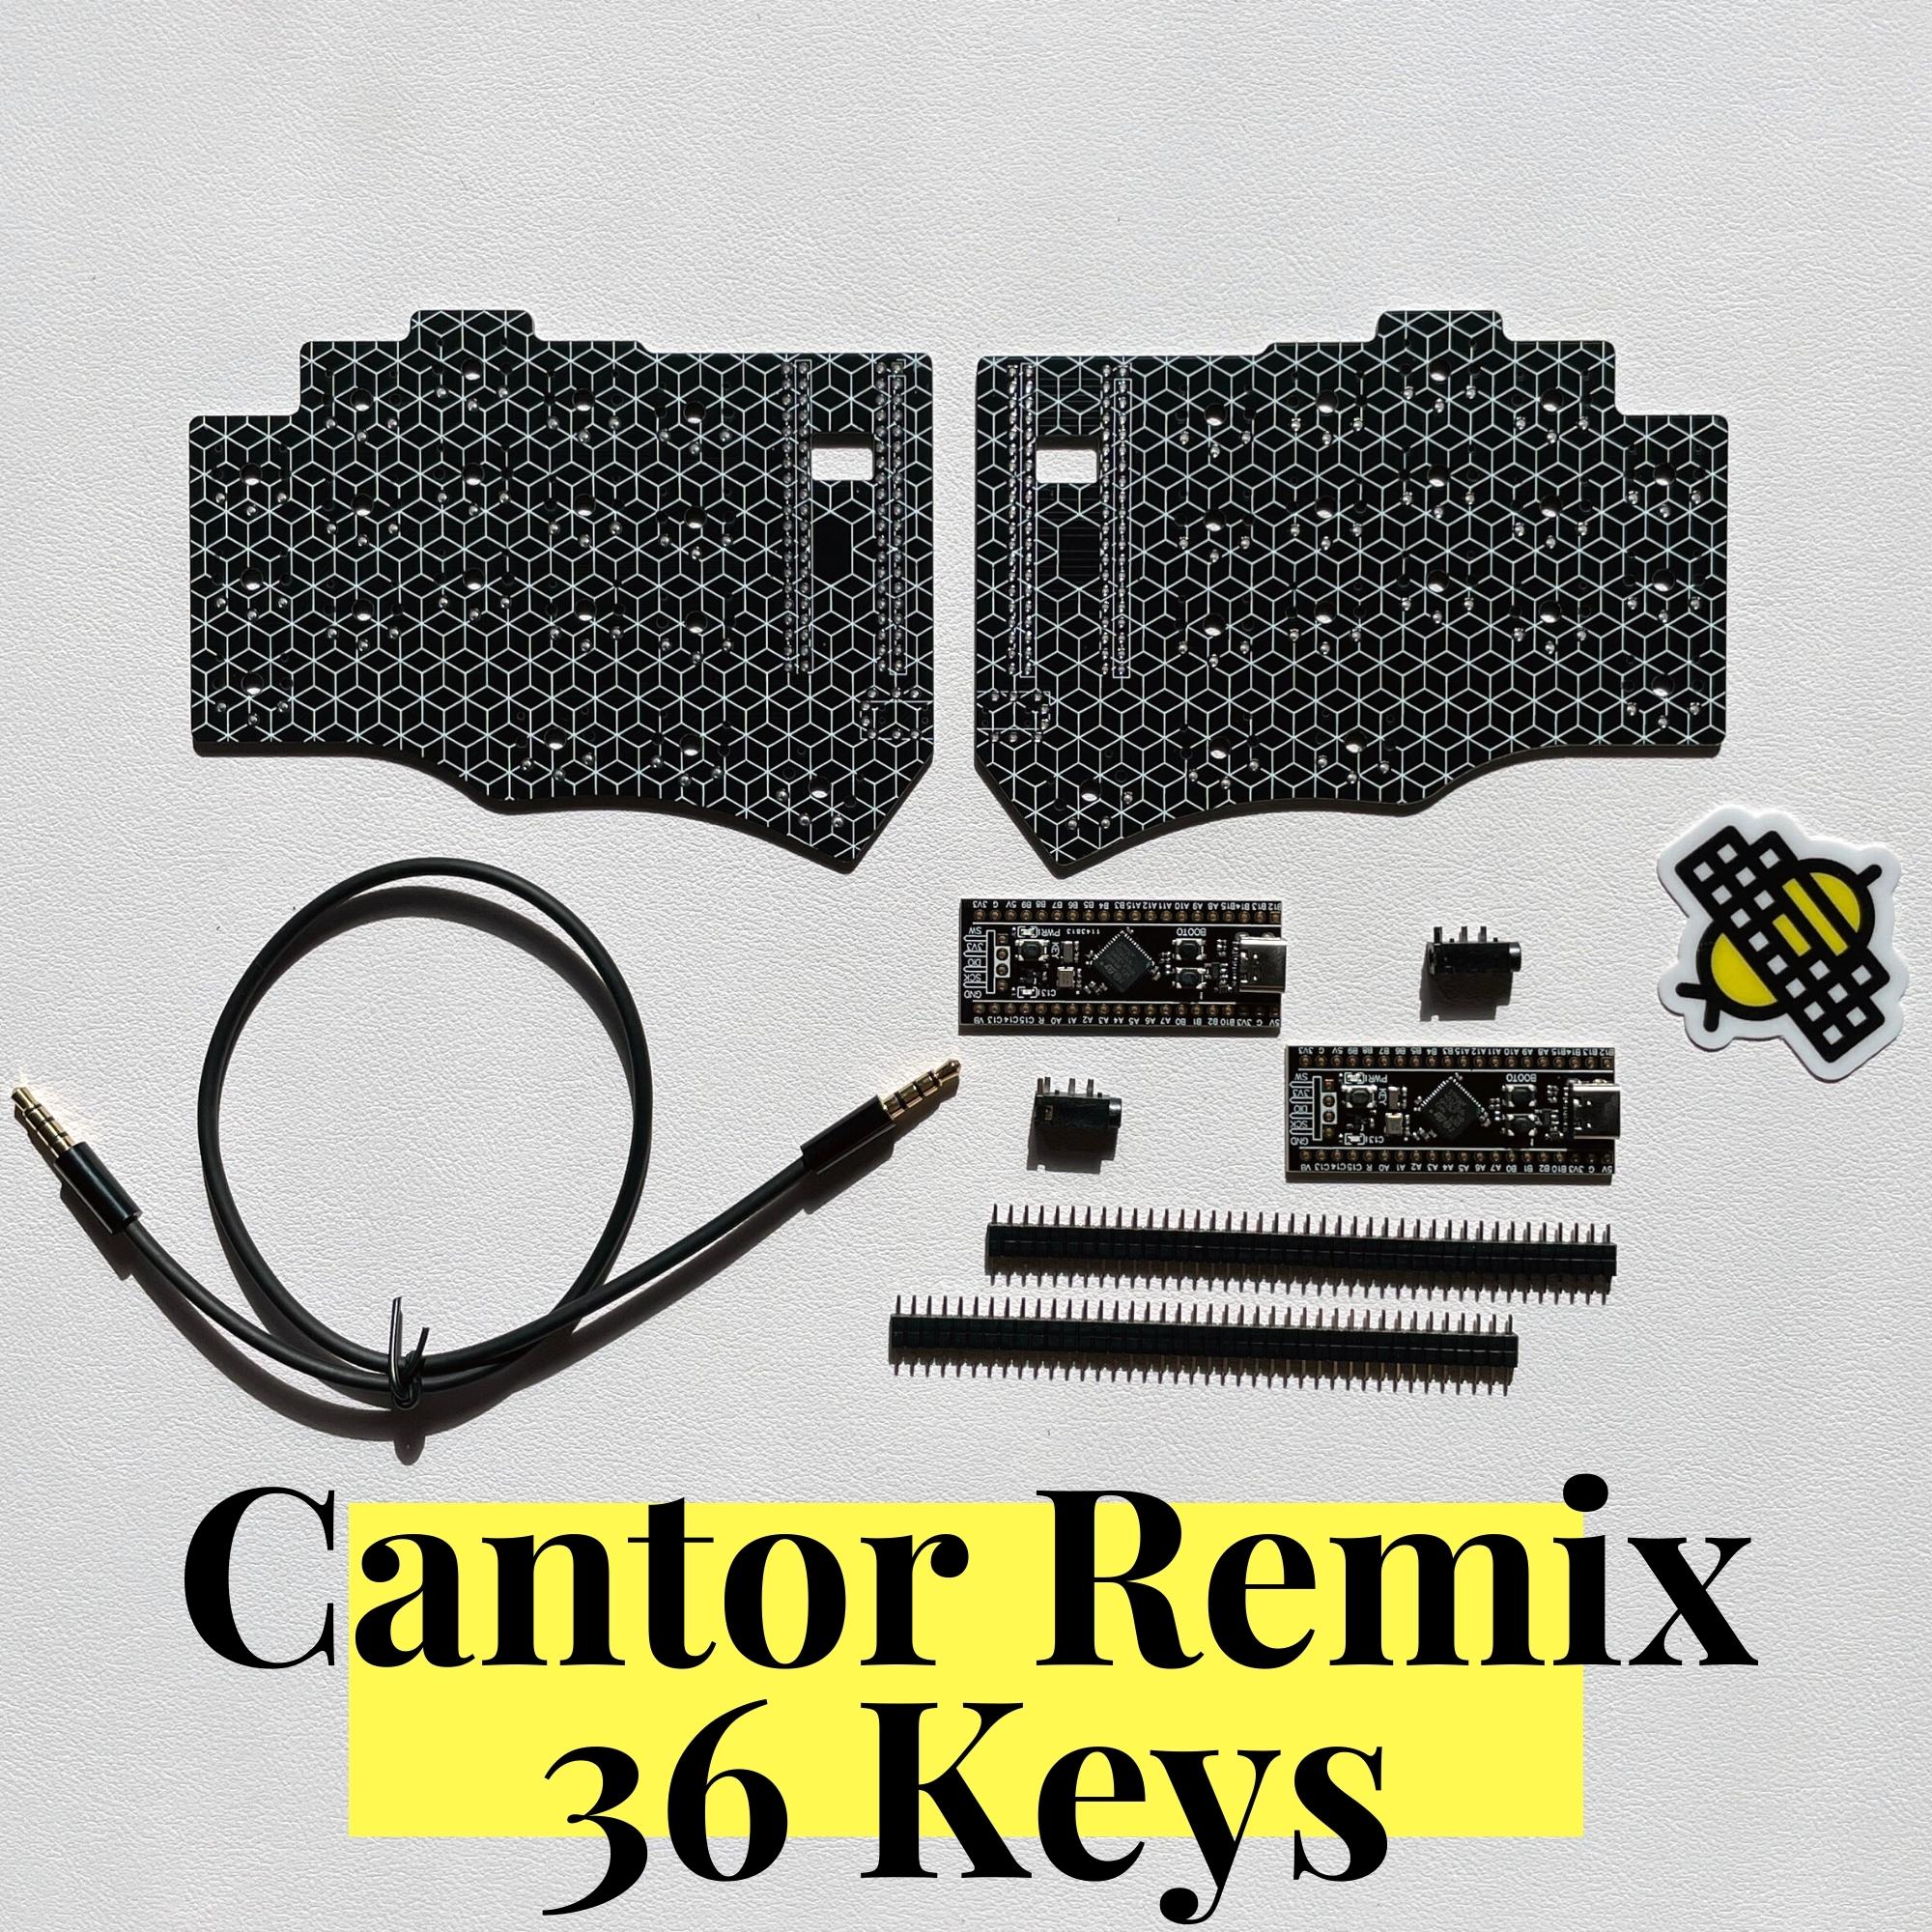 Cantor Remix 36 Keys PCB Kit